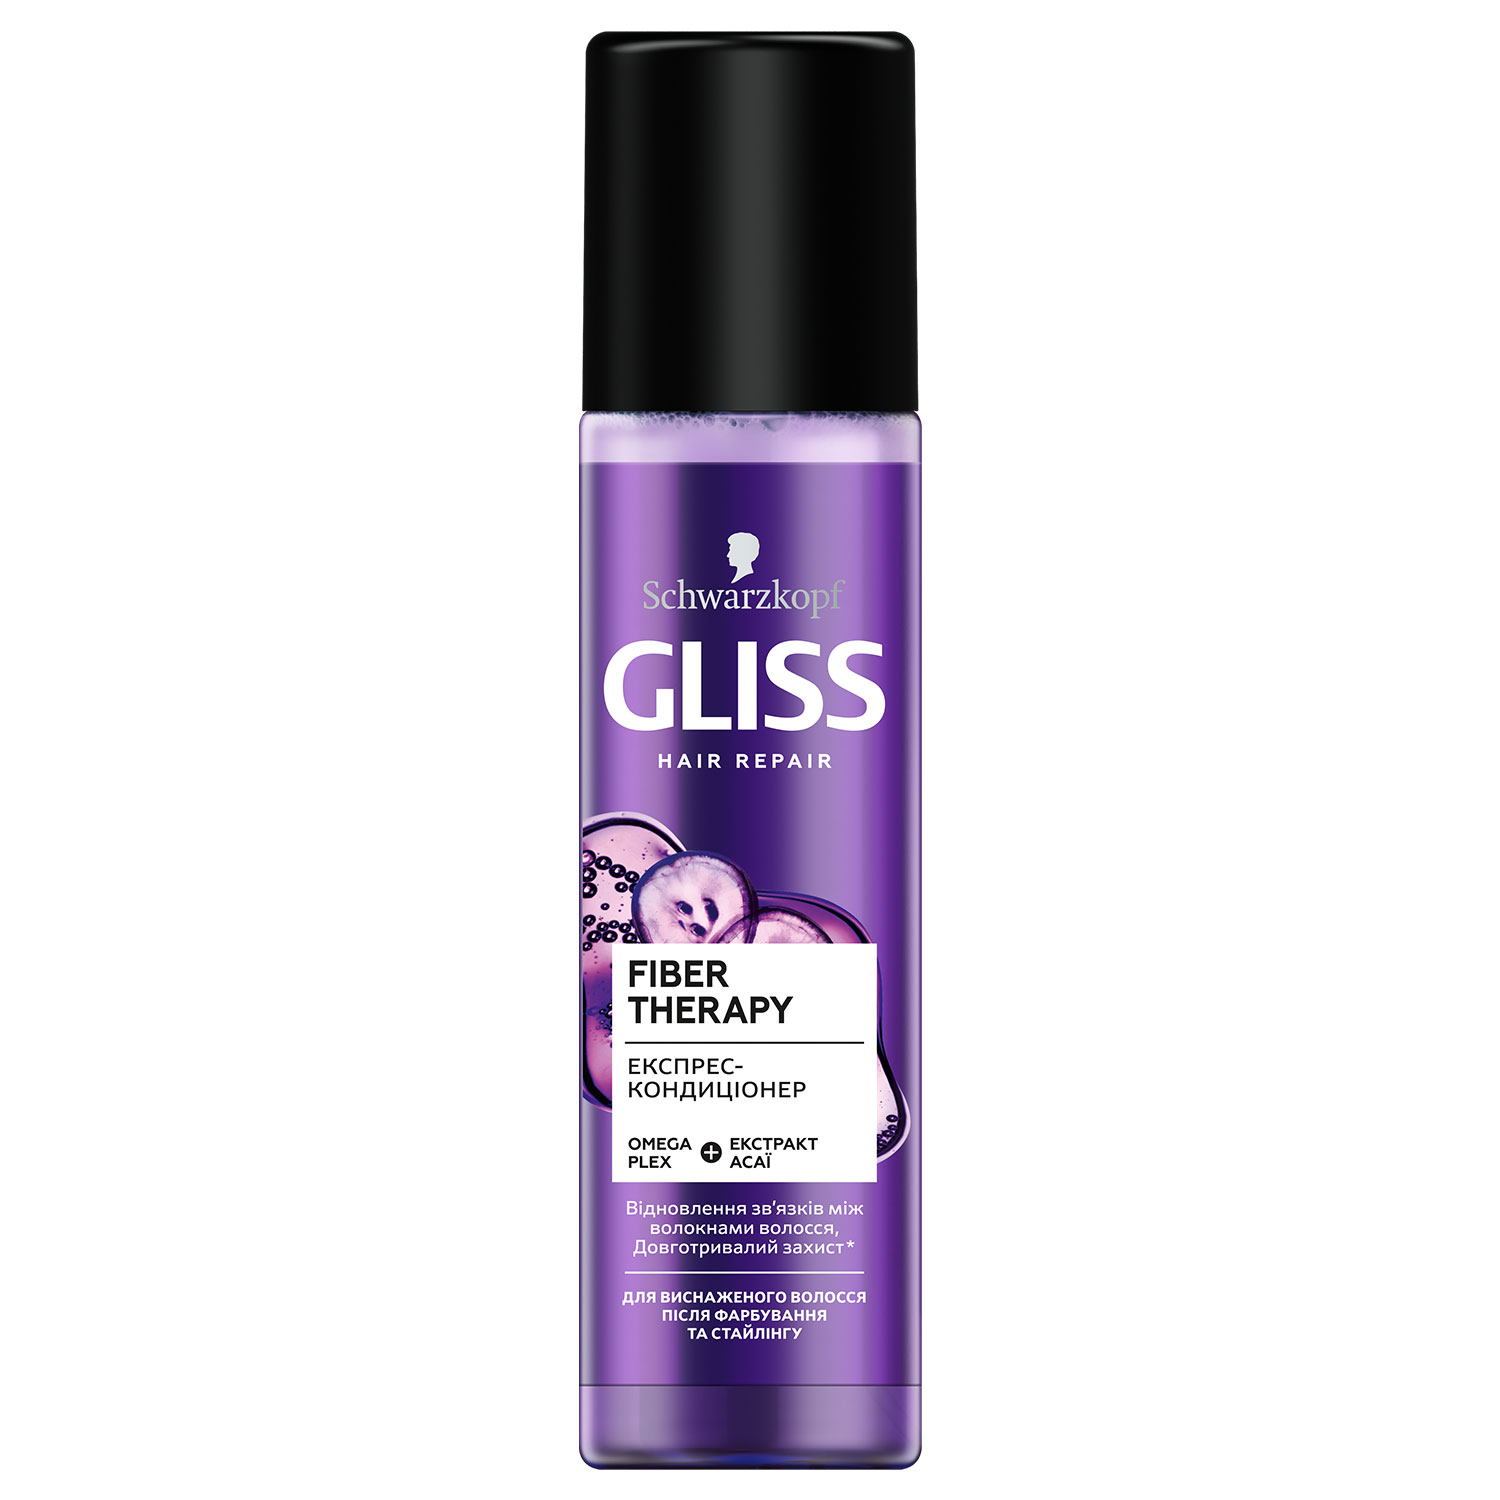 Экспресс-кондиционер GLISS Fiber Therapy для истощенных волос после окрашивания и стайлинга, 200 мл